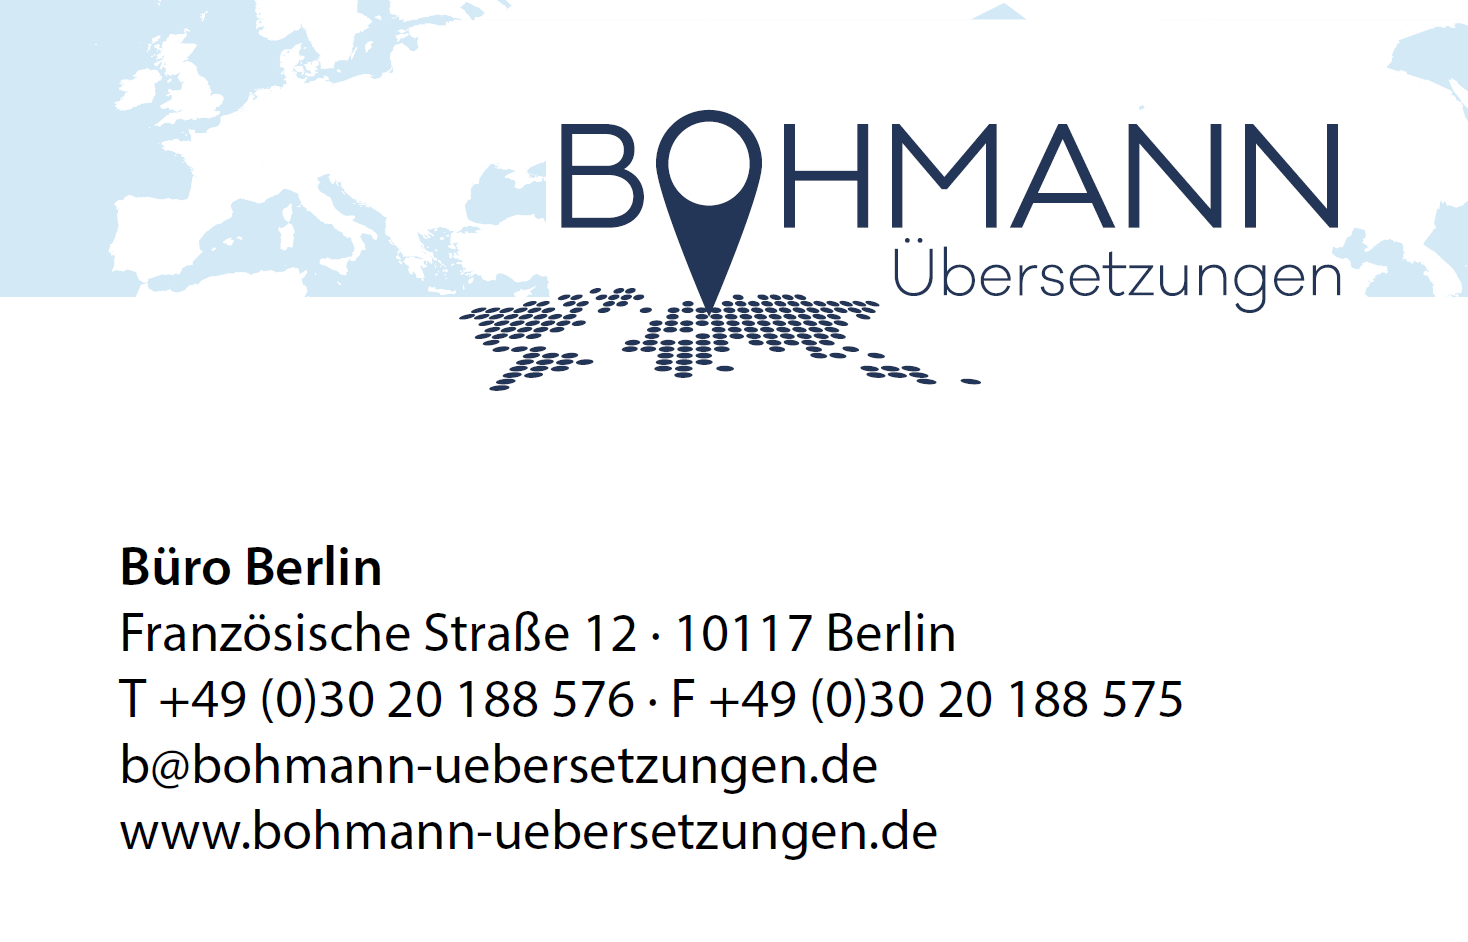 Bohmann Übersetzungen Berlin